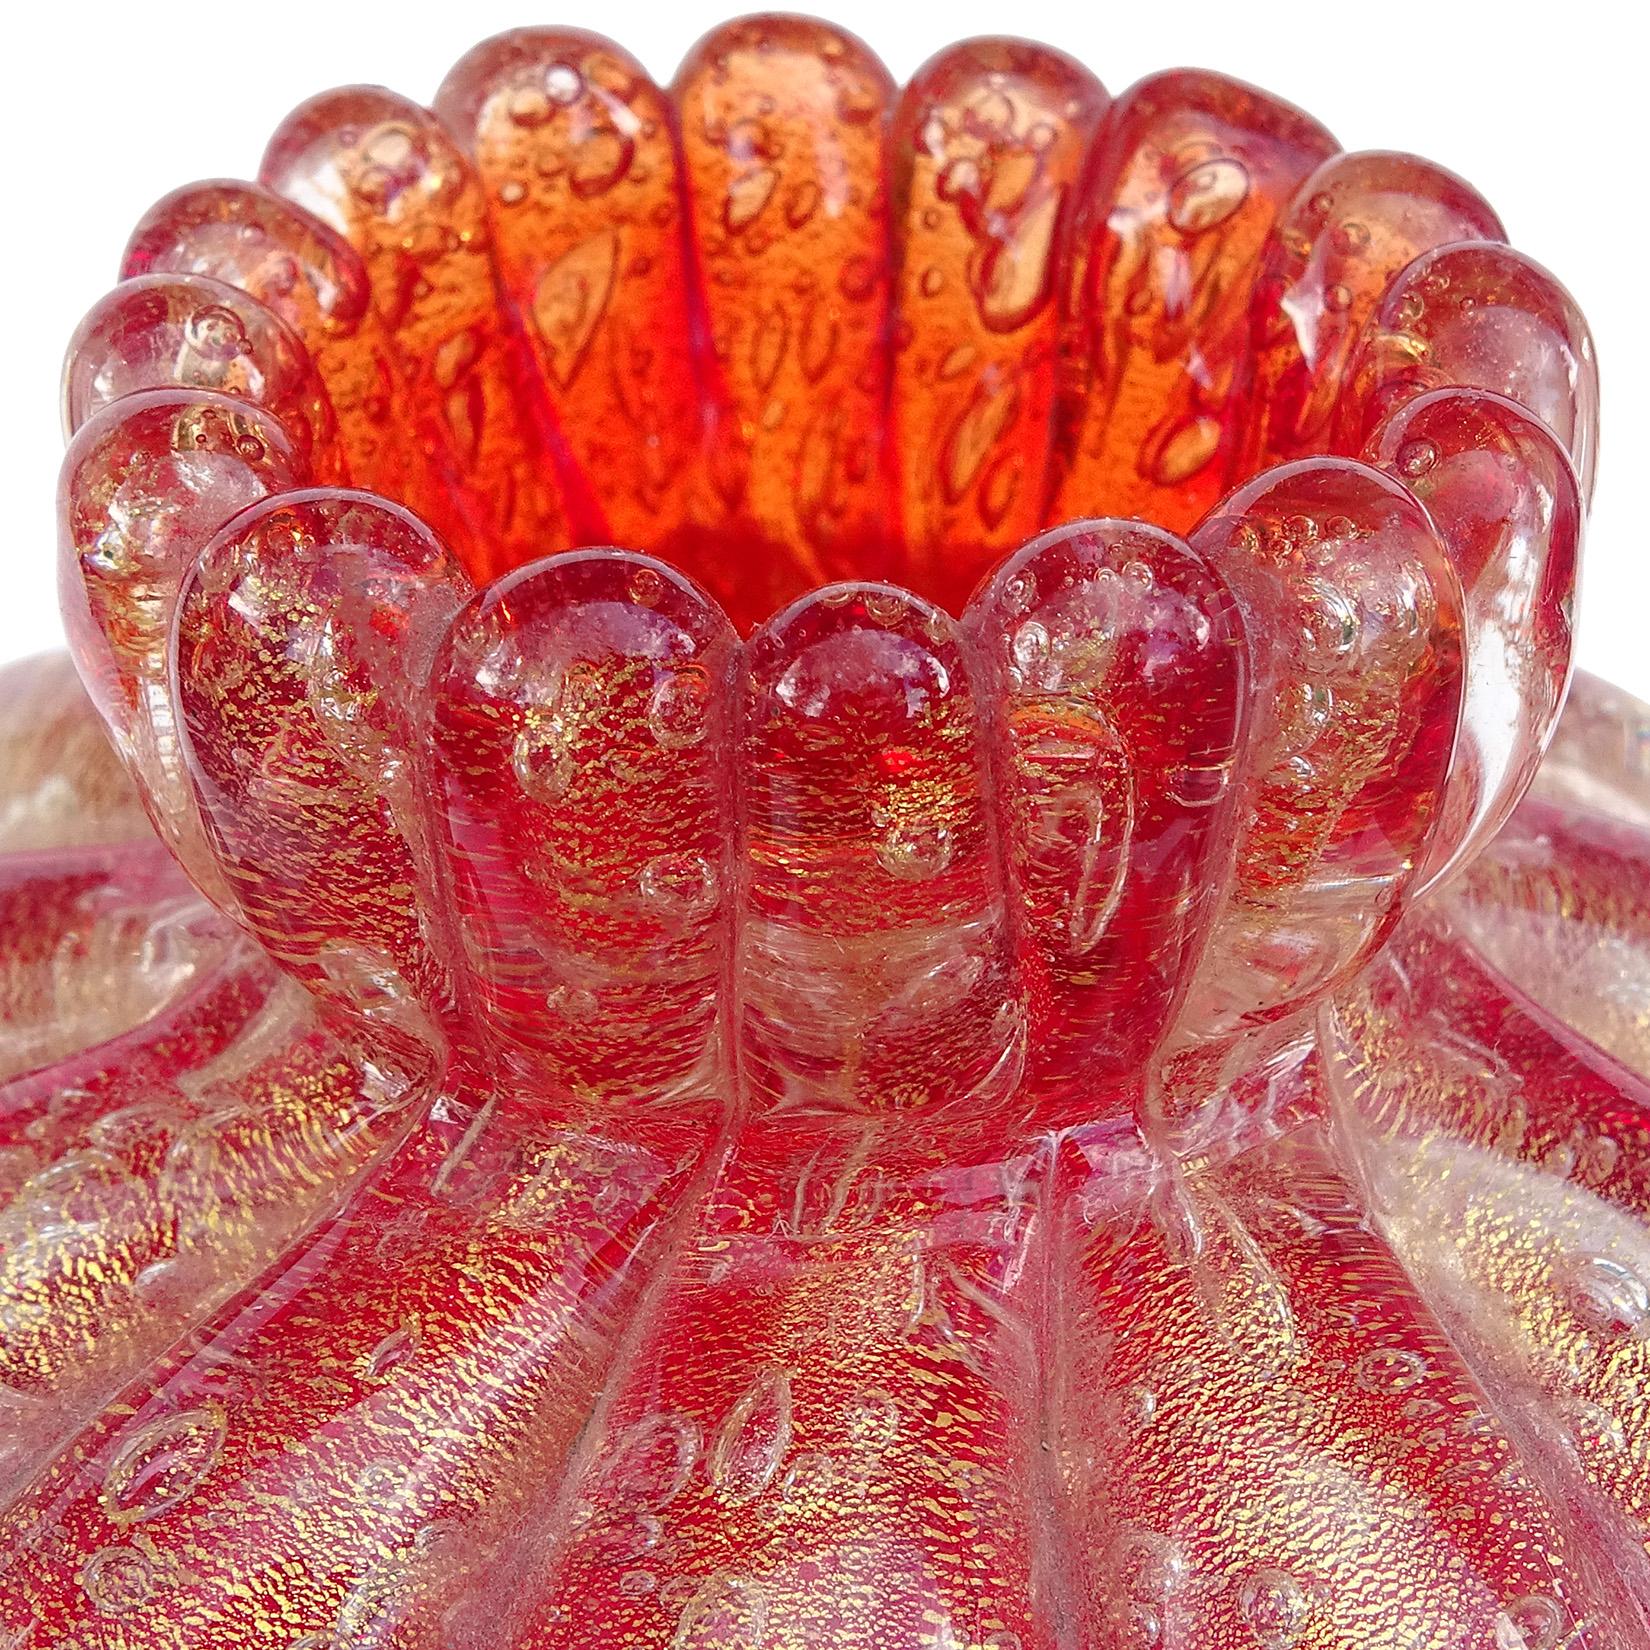 Magnifique vase d'art italien en verre soufflé à la main de Murano, rouge et mouchetures d'or. Documenté à la société Seguso Vetri d'Arte. Publié dans le livre d'entreprise, avec le numéro de modèle 9774, vers 1954-1955. Créé selon la technique 